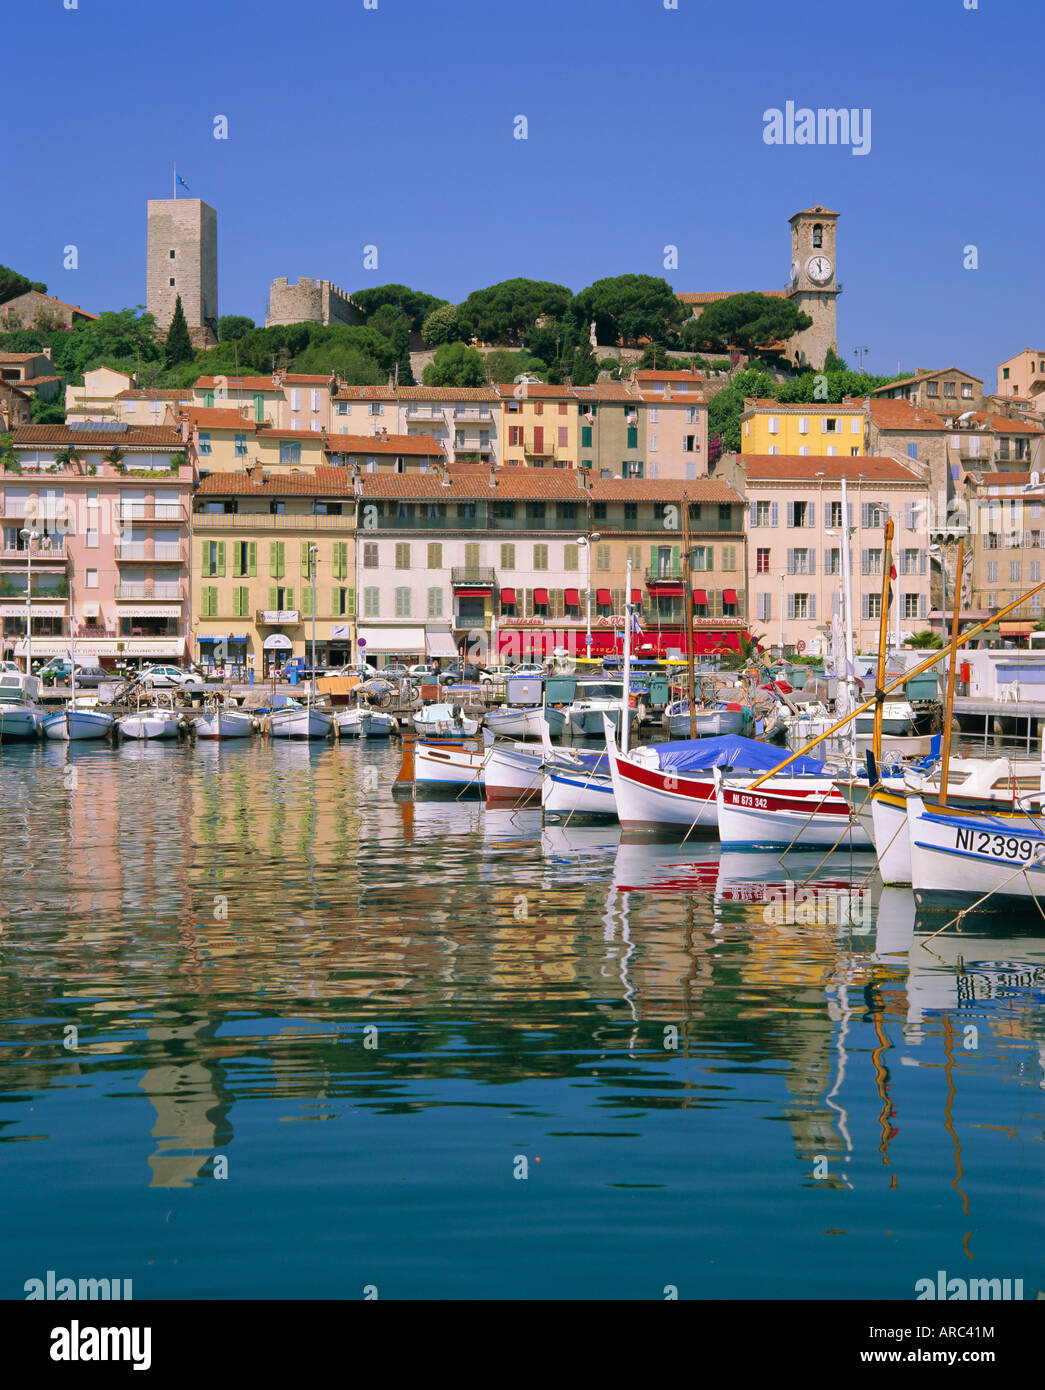 Port et front de mer, Cannes, Côte d'Azur, Alpes-Maritimes, Provence, France, Europe Banque D'Images